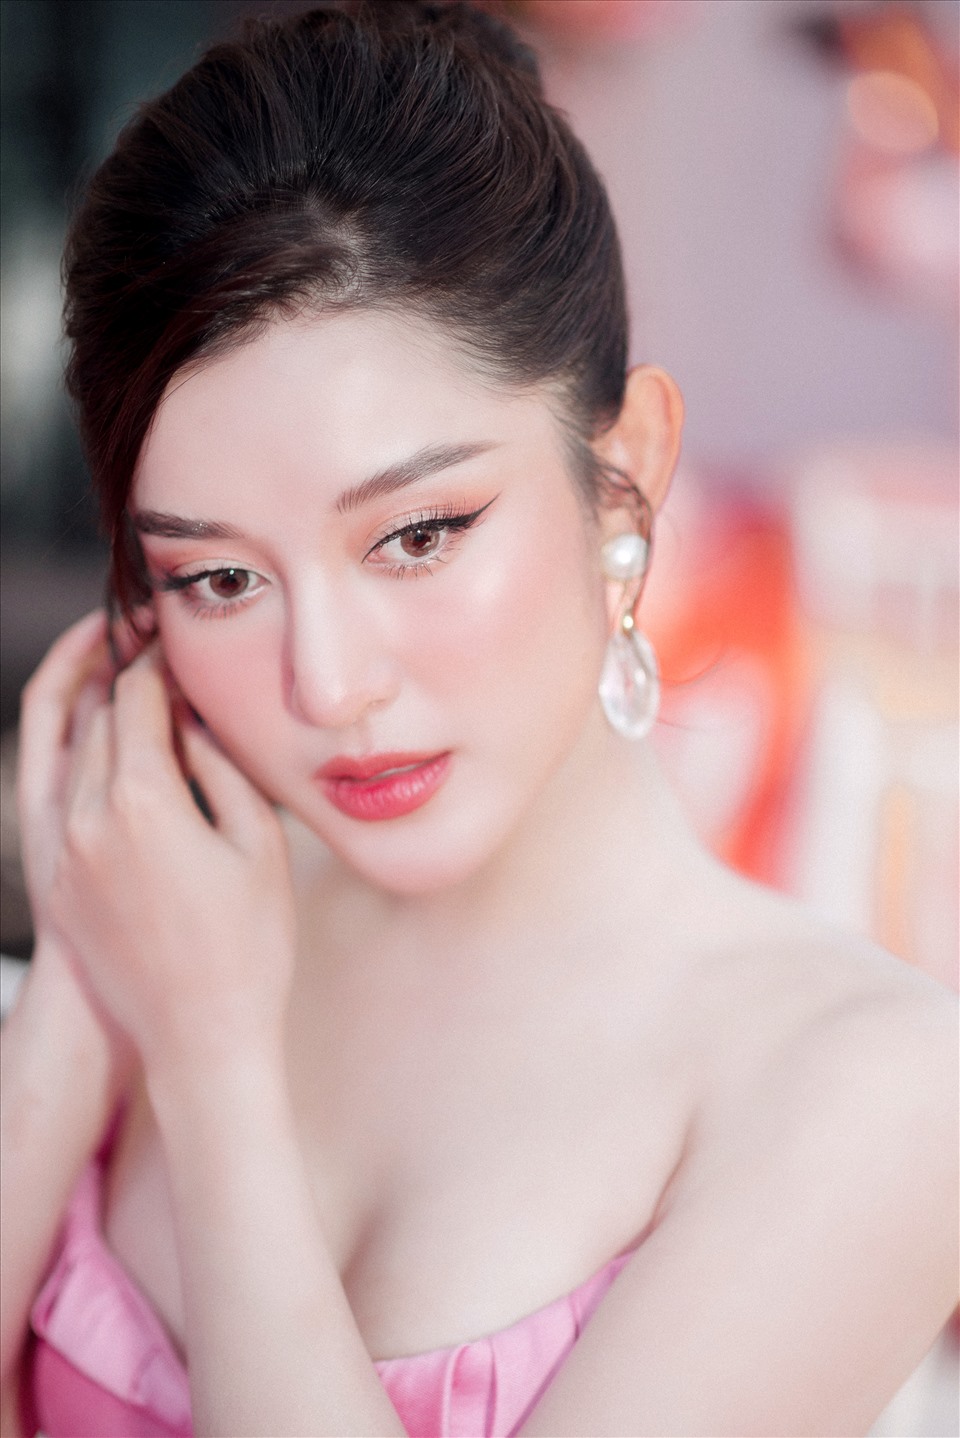 Ở tuổi 27, Á hậu 1 Hoa hậu Việt Nam 2014 Huyền My chọn phong cách nhẹ nhàng, quyến rũ.